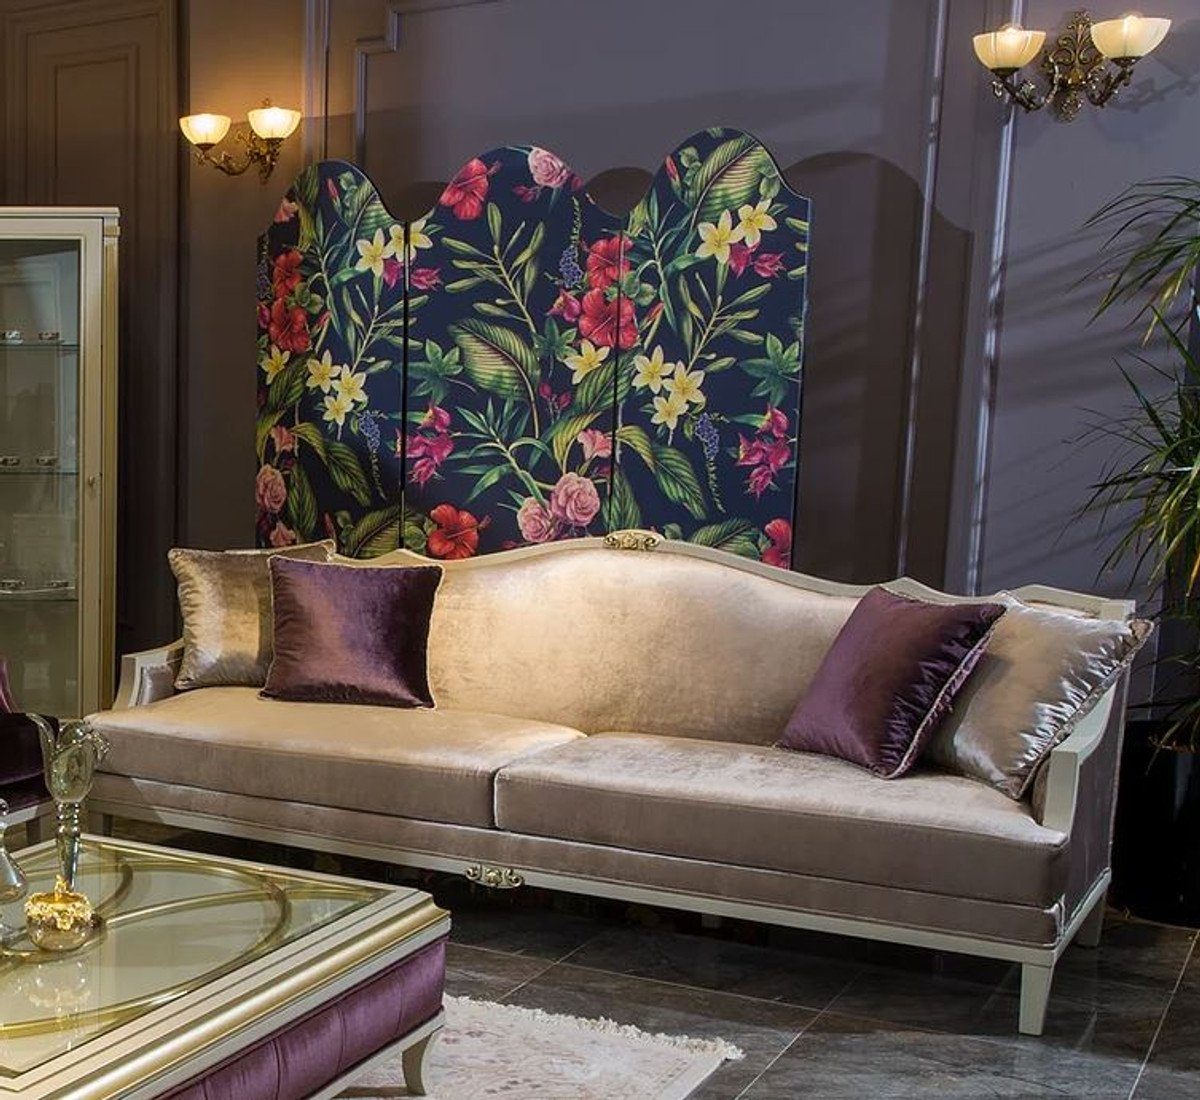 Casa Padrino Sofa Luxus Barock Sofa Rosa / Weiß / Gold 239 x 83 x H. 93 cm - Edles Wohnzimmer Sofa mit dekorativen Kissen - Barock Wohnzimmer Möbel